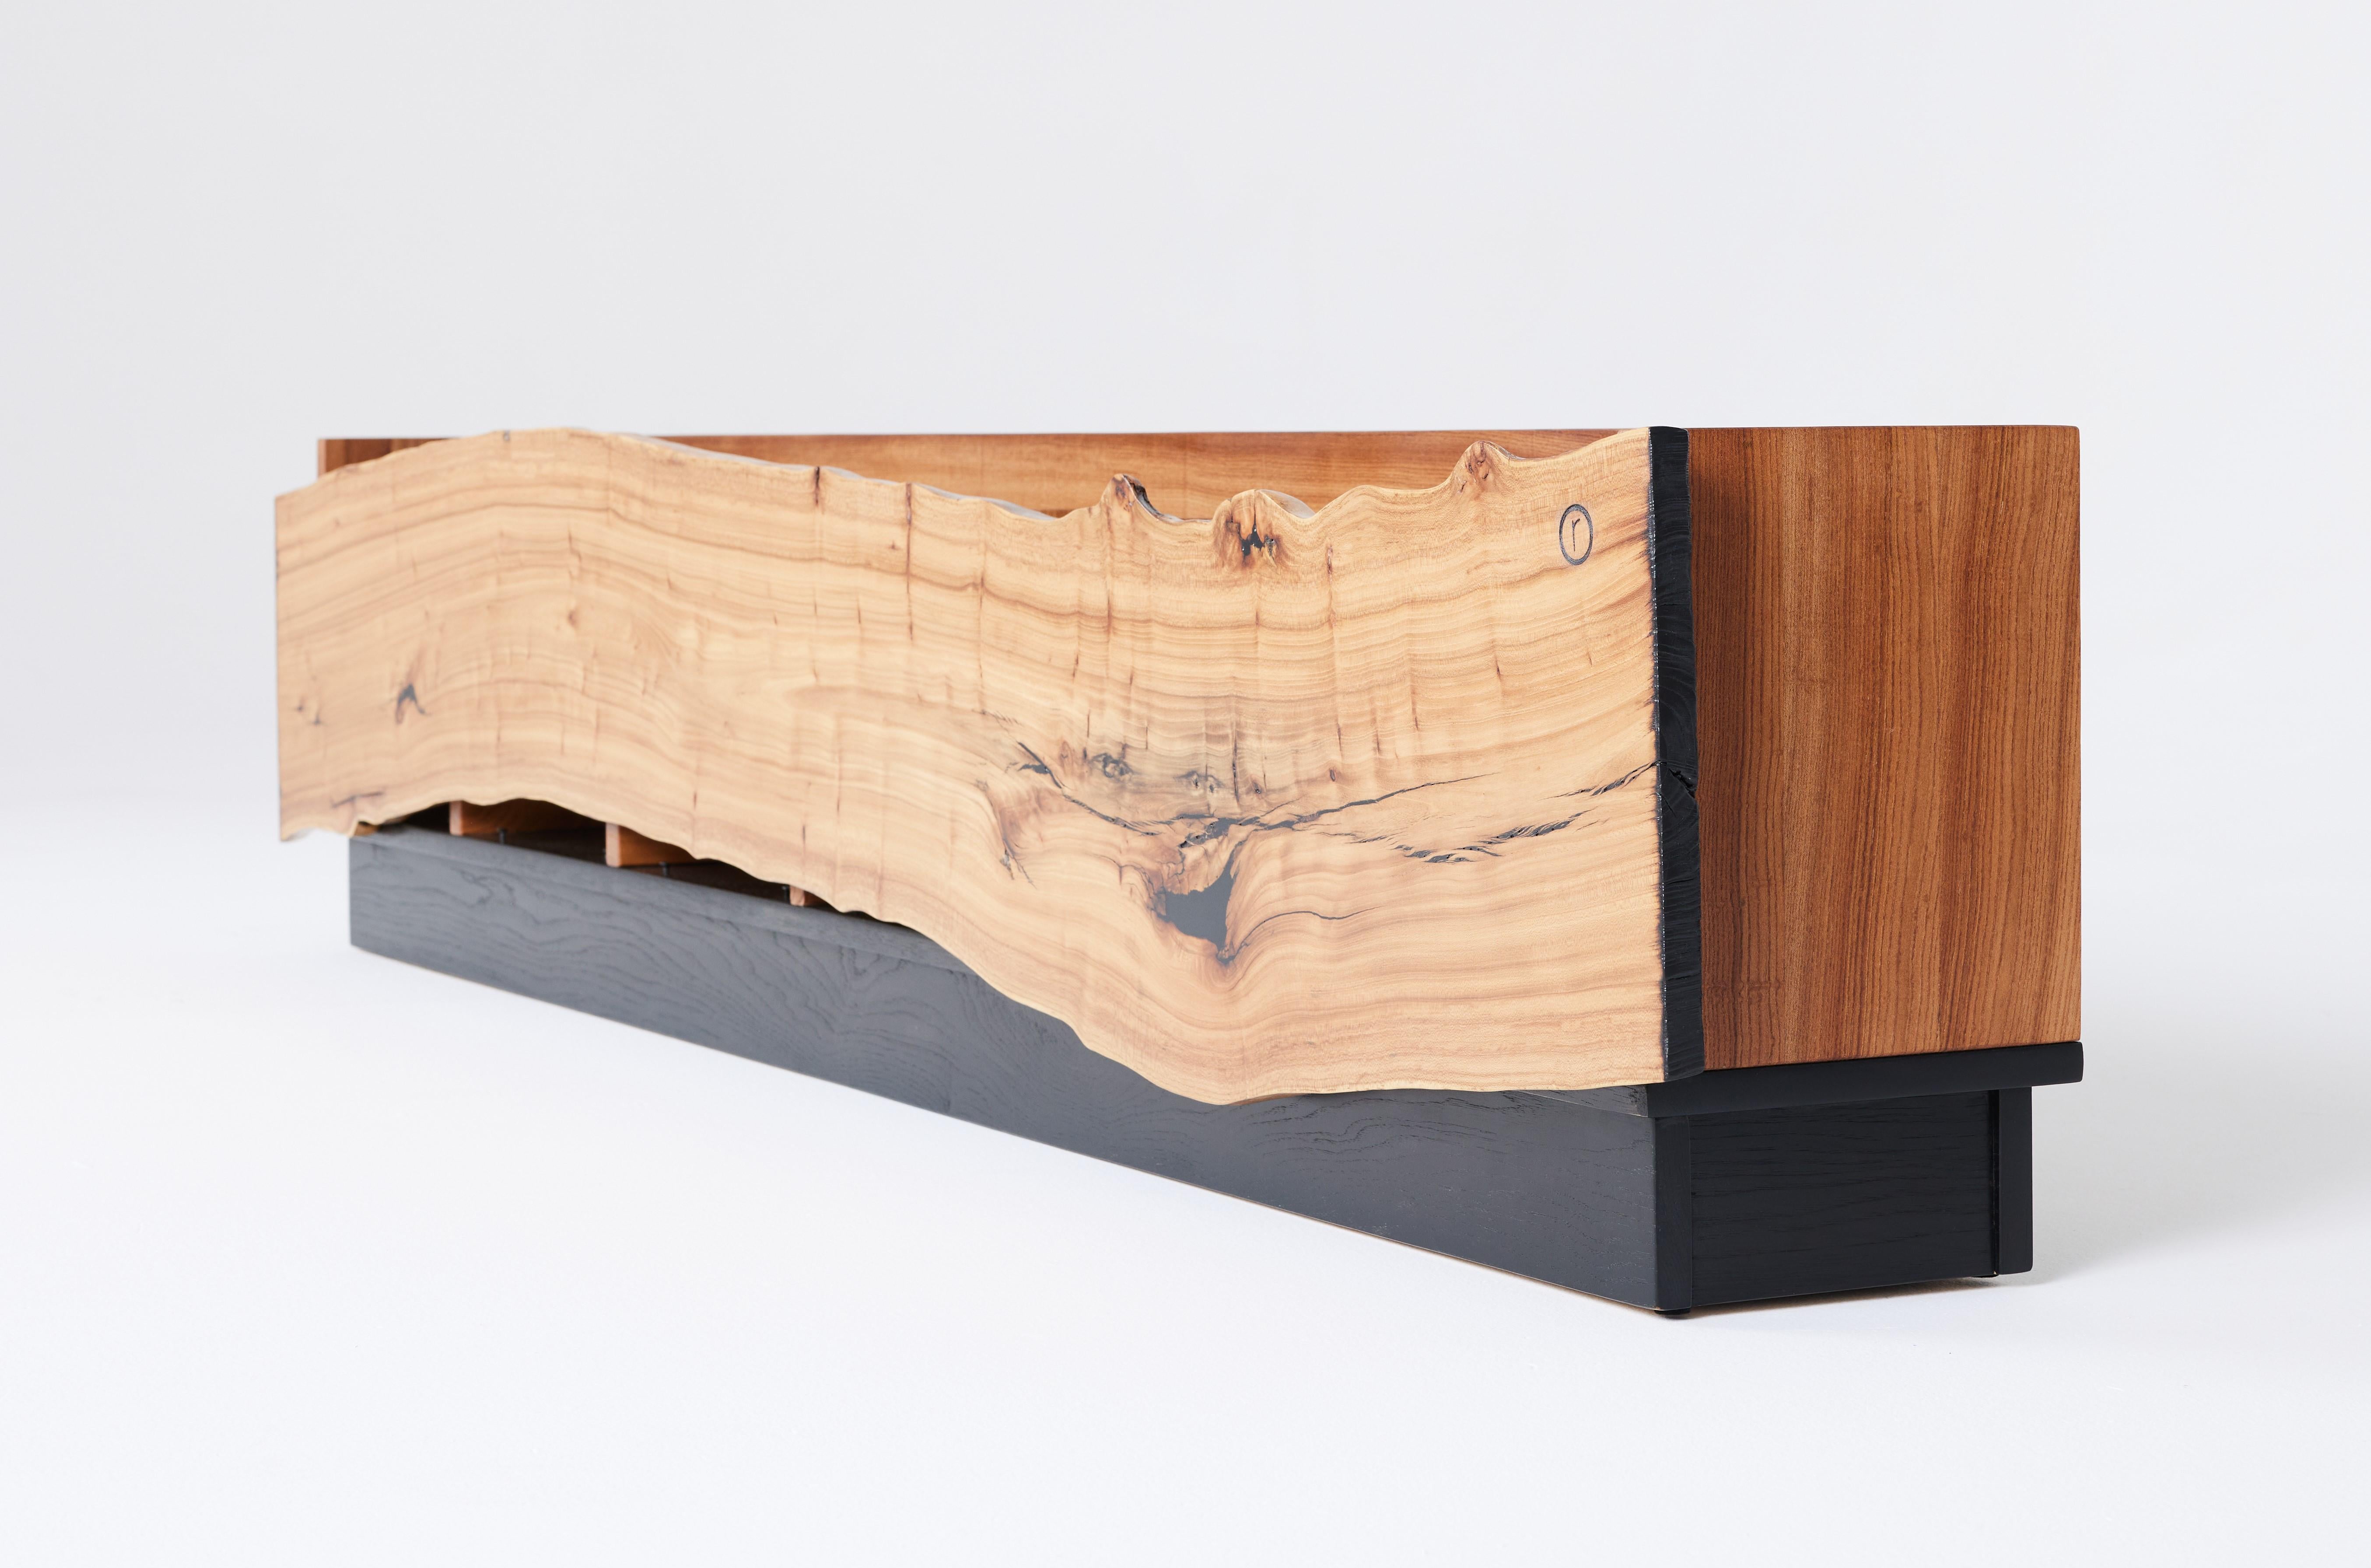 Diese moderne, organische Plattenkonsole von Carlo Stenta ist aus mehreren Ulmenholzplatten gefertigt, die aus einer einzigen Ulme gefräst wurden. Die Schallplattenkonsole verfügt über kunstvoll gefertigte Trennwände, die genau bemessen sind, so